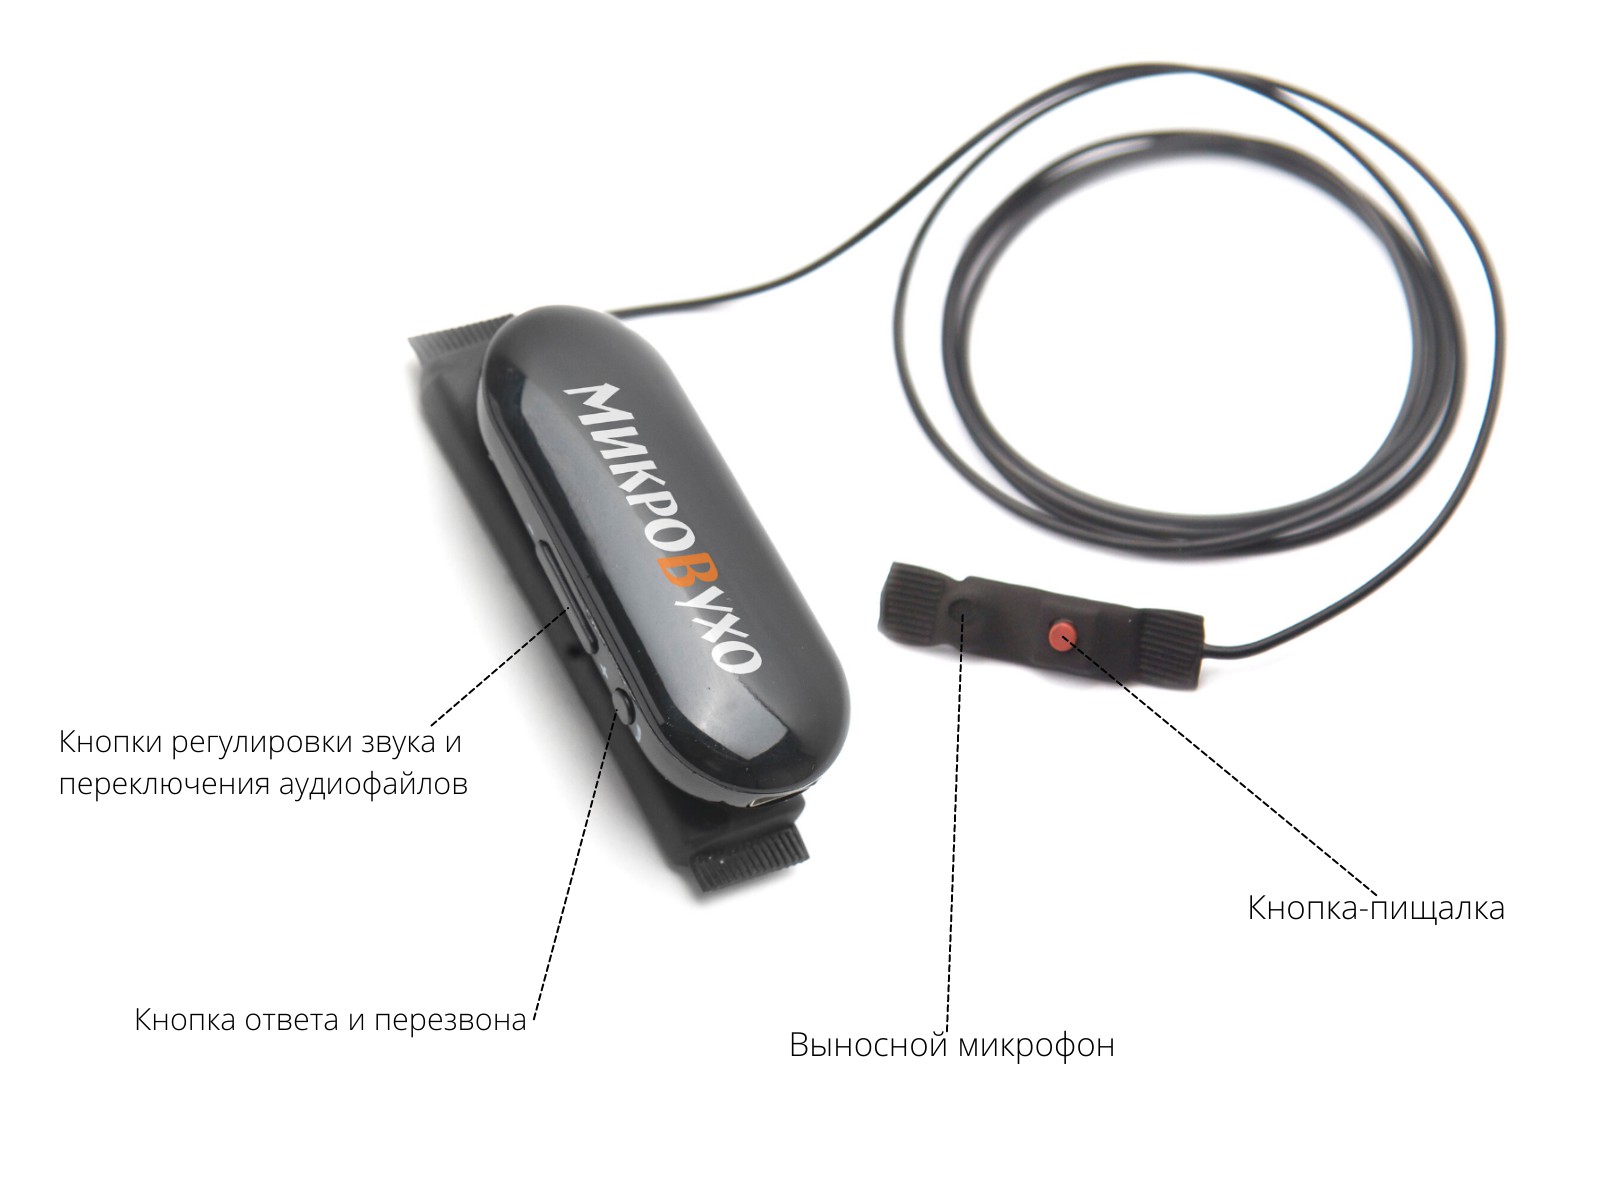 Универсальная гарнитура Bluetooth Box Pro Plus c капсулой К5 4 мм и магнитами 2 мм - изображение 18